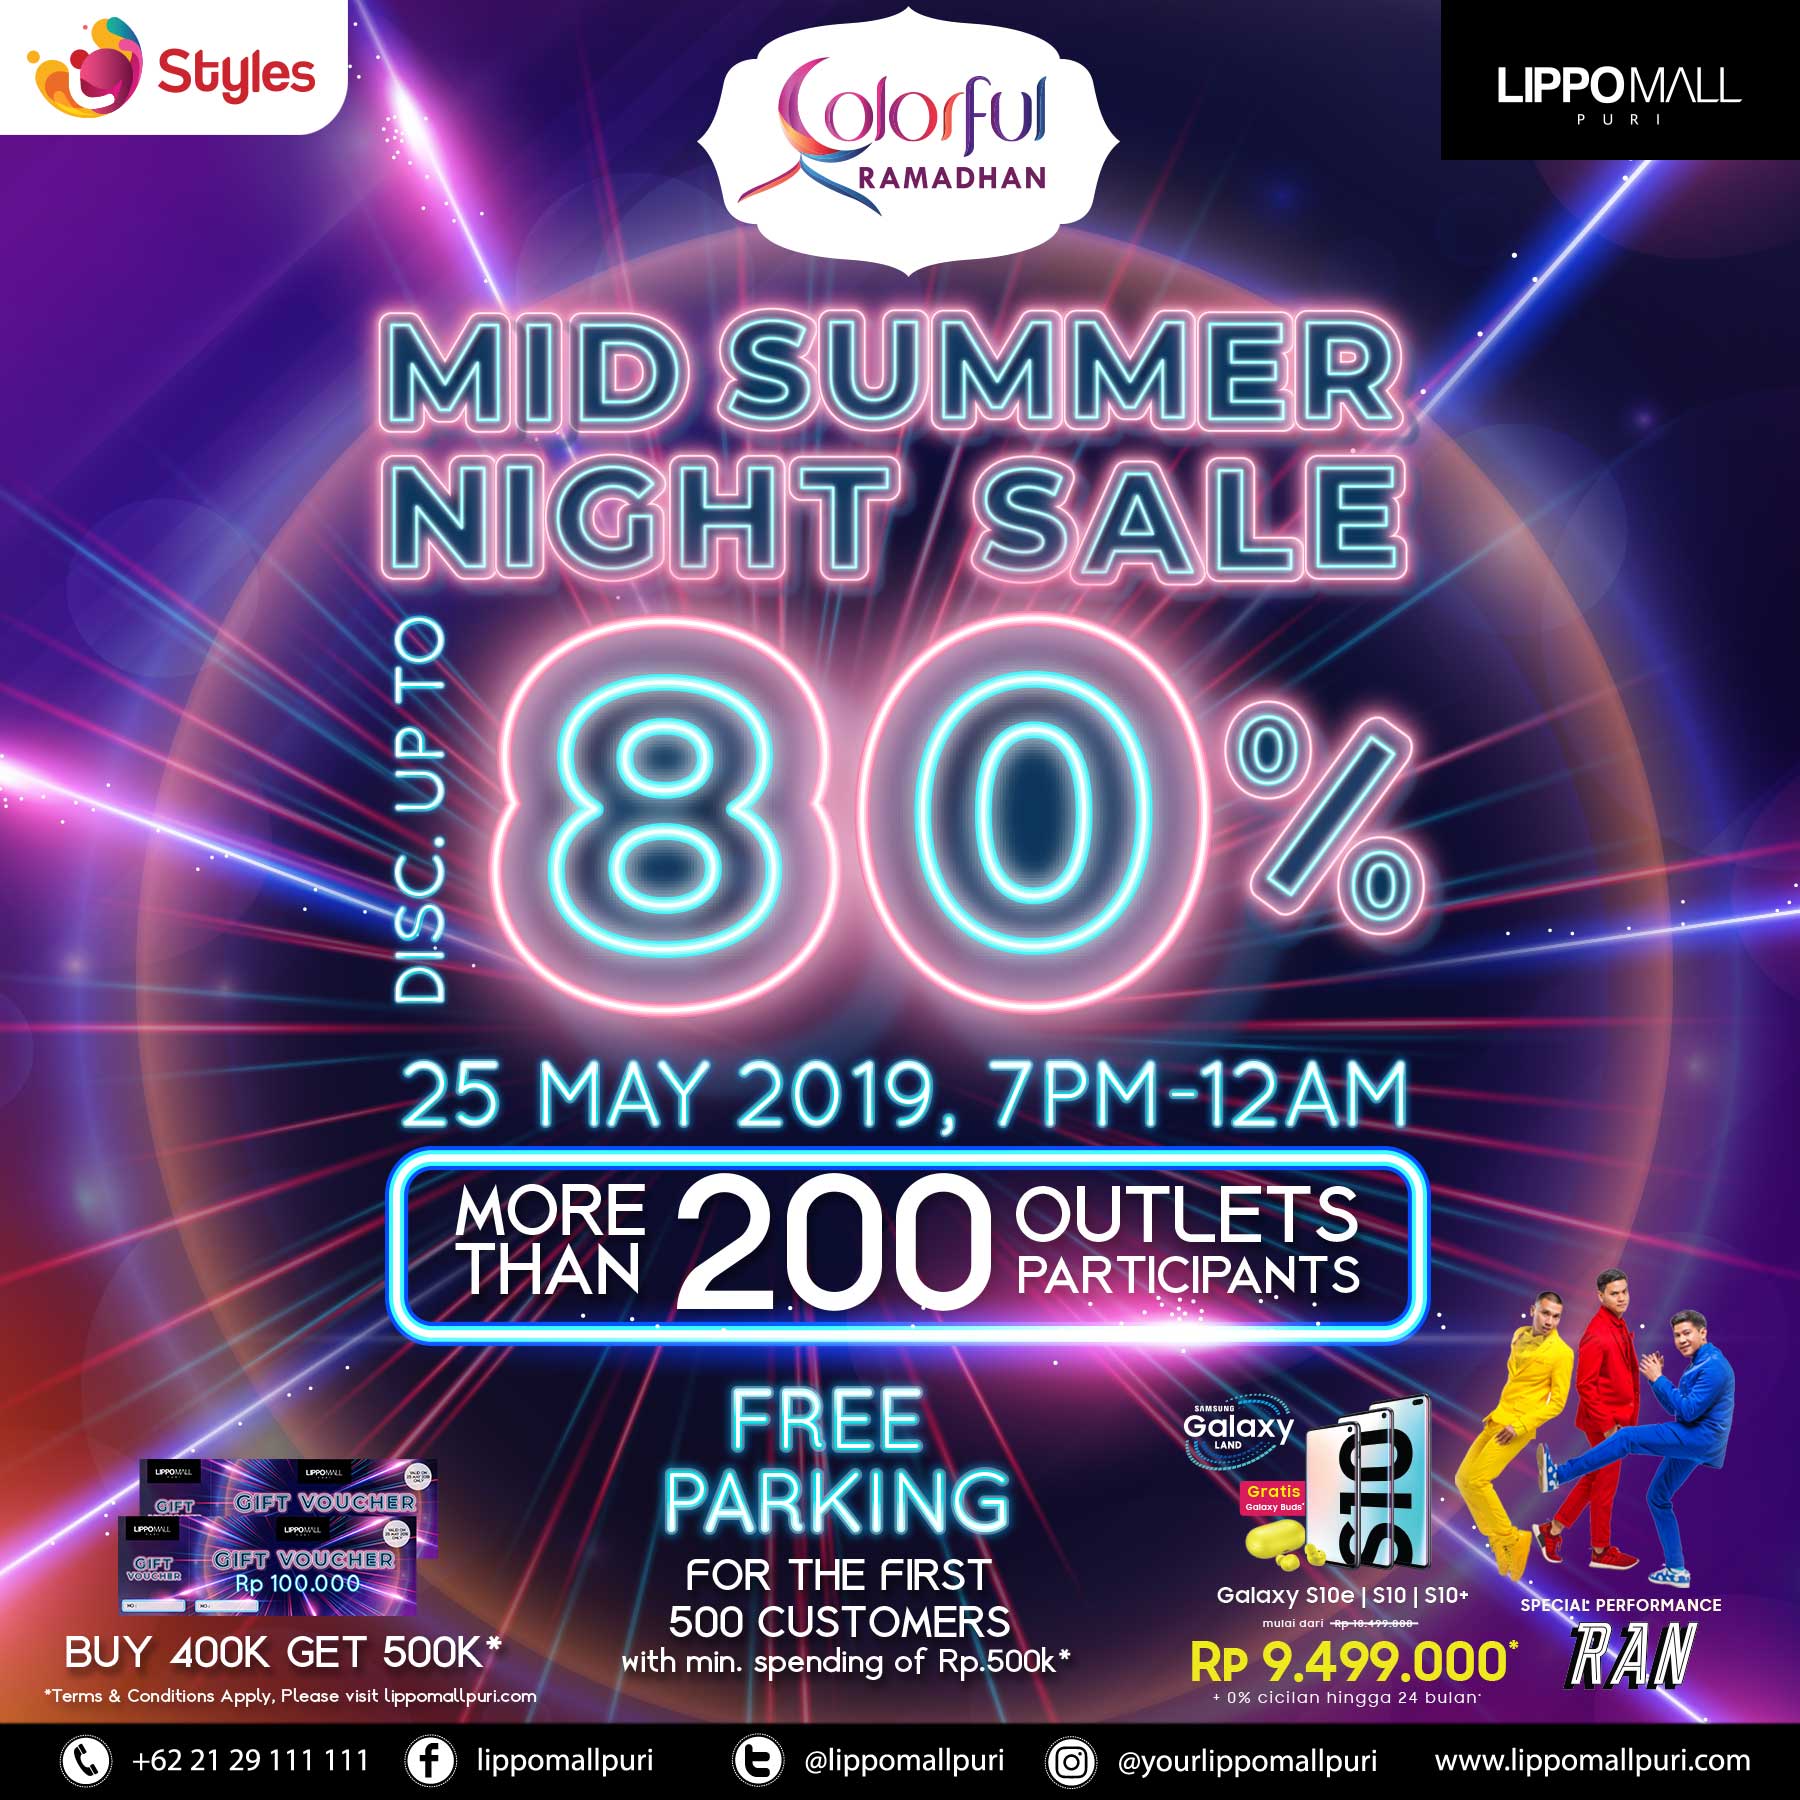 Mid Summer night sale 80% in lippo mall puri st. moritz